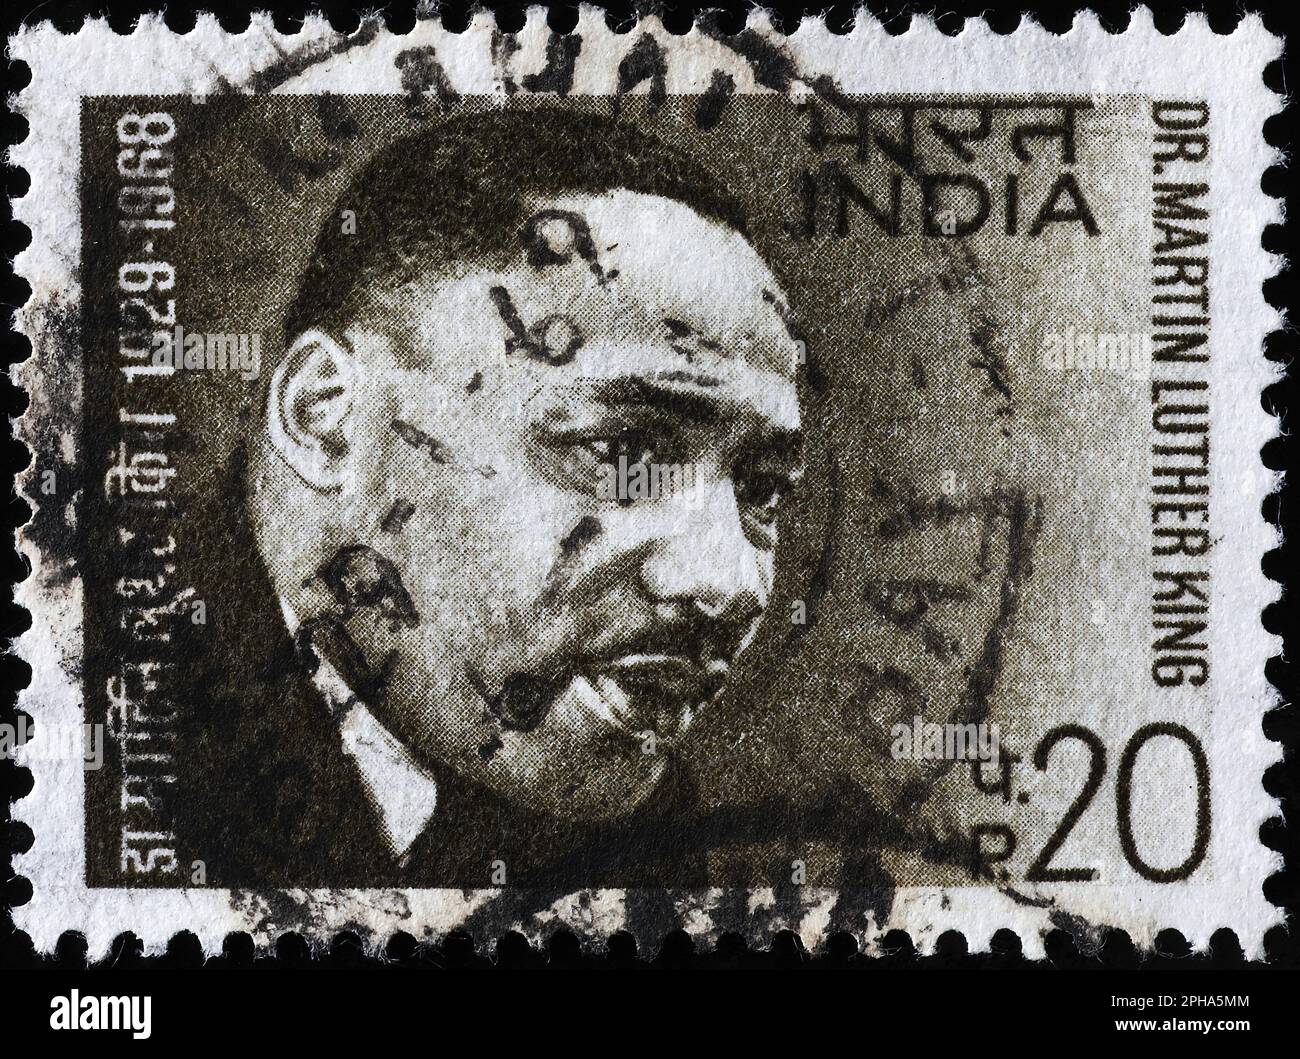 Martin Luther King Jr. Sur timbre-poste indien Banque D'Images